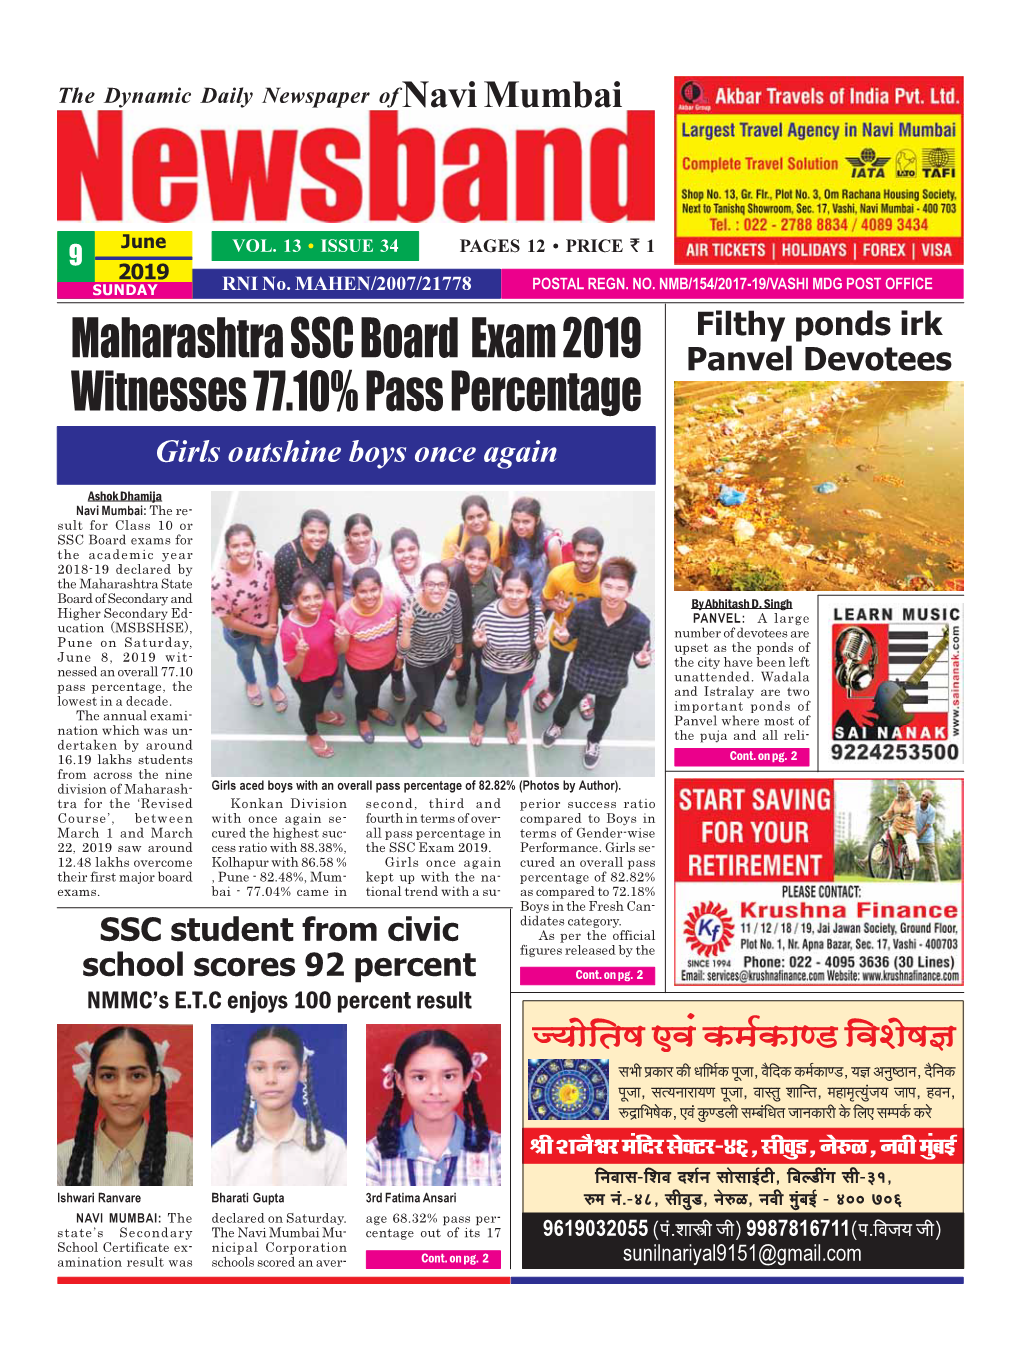 Maharashtra SSC Board Exam 2019 Witnesses 77.10% Pass Percentage